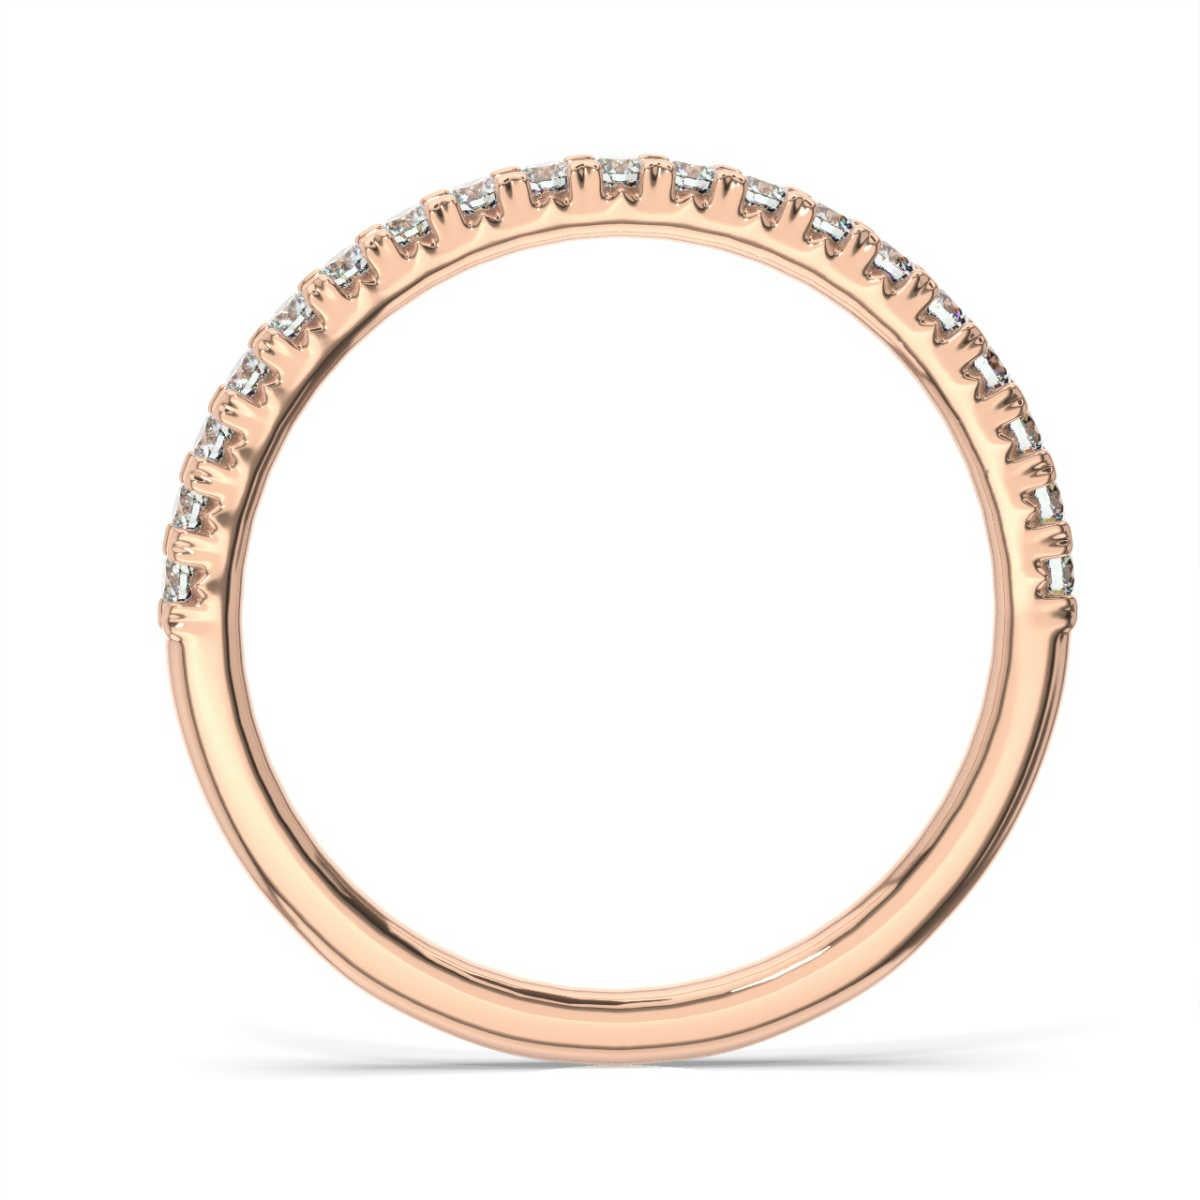 Dieser atemberaubende Ring zeichnet sich durch französische Pave-Diamanten aus, eine Art der Fassung, die es dem Licht ermöglicht, unsere perfekt aufeinander abgestimmten Diamanten aus vielen Winkeln zu erreichen. Er funkelt wie kein anderer